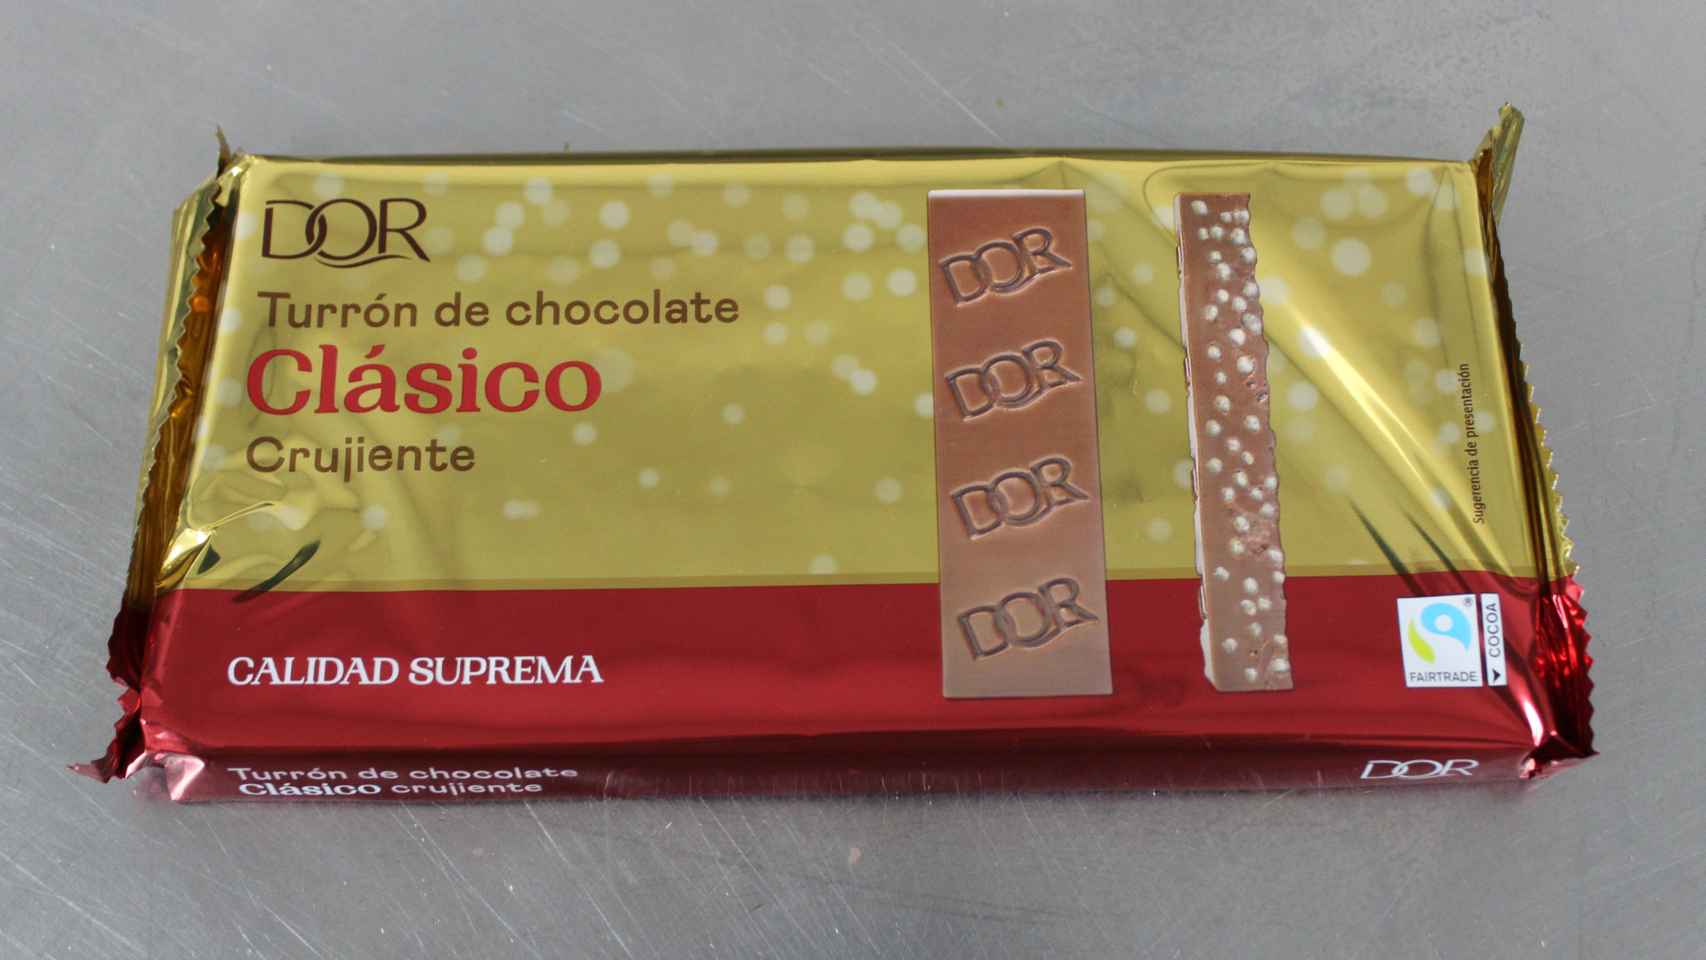 El turrón crujiente de chocolate de Dor, la marca blanca de Lidl.